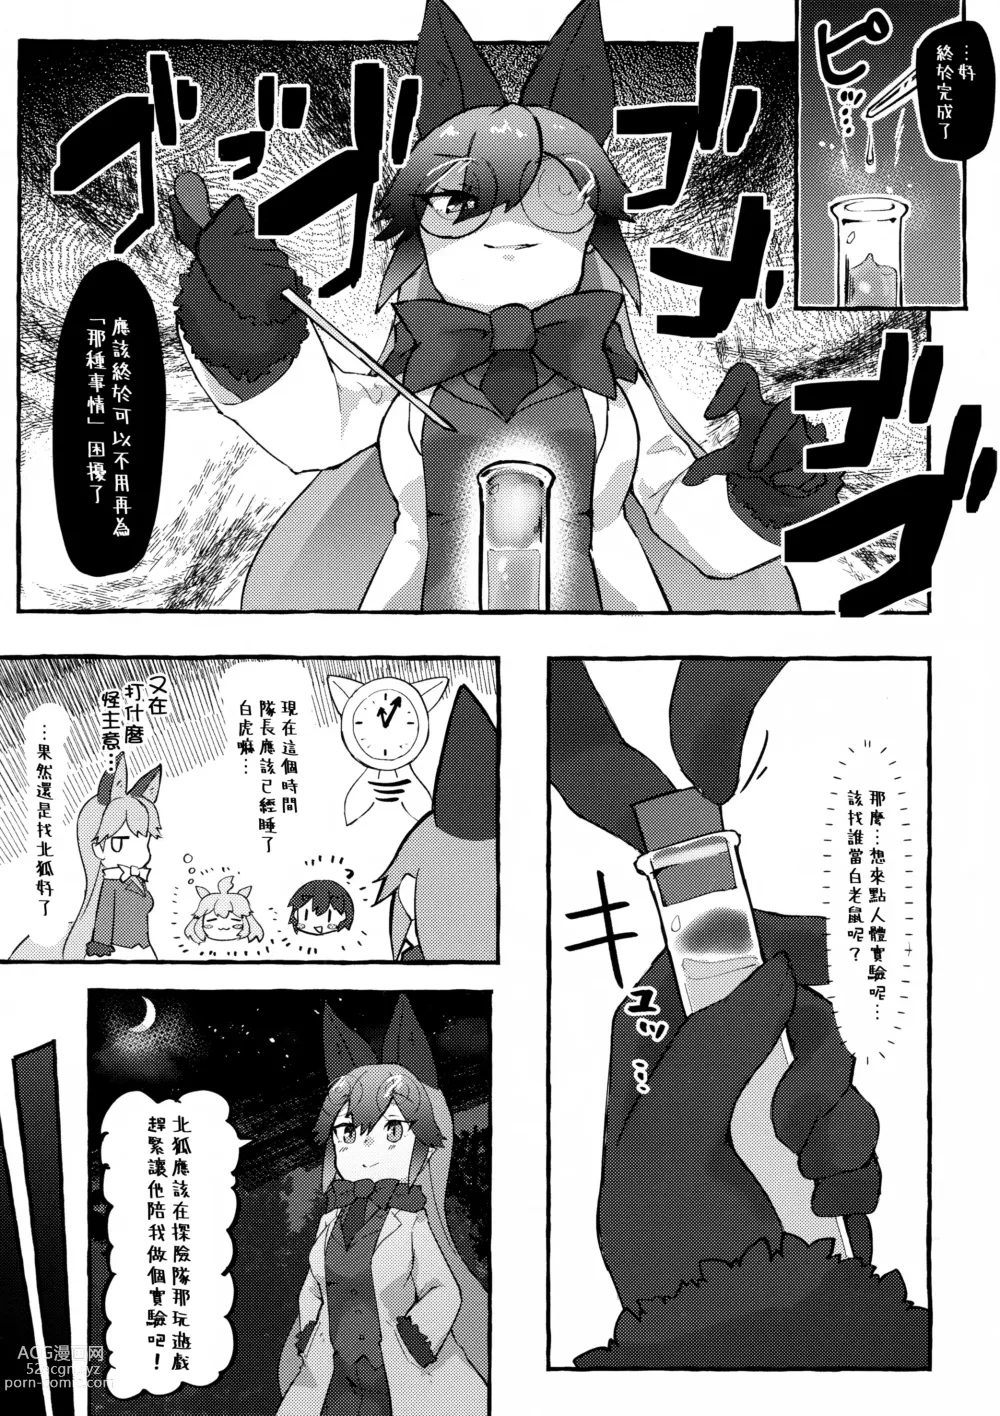 Page 3 of doujinshi Gingitsune Kunkun